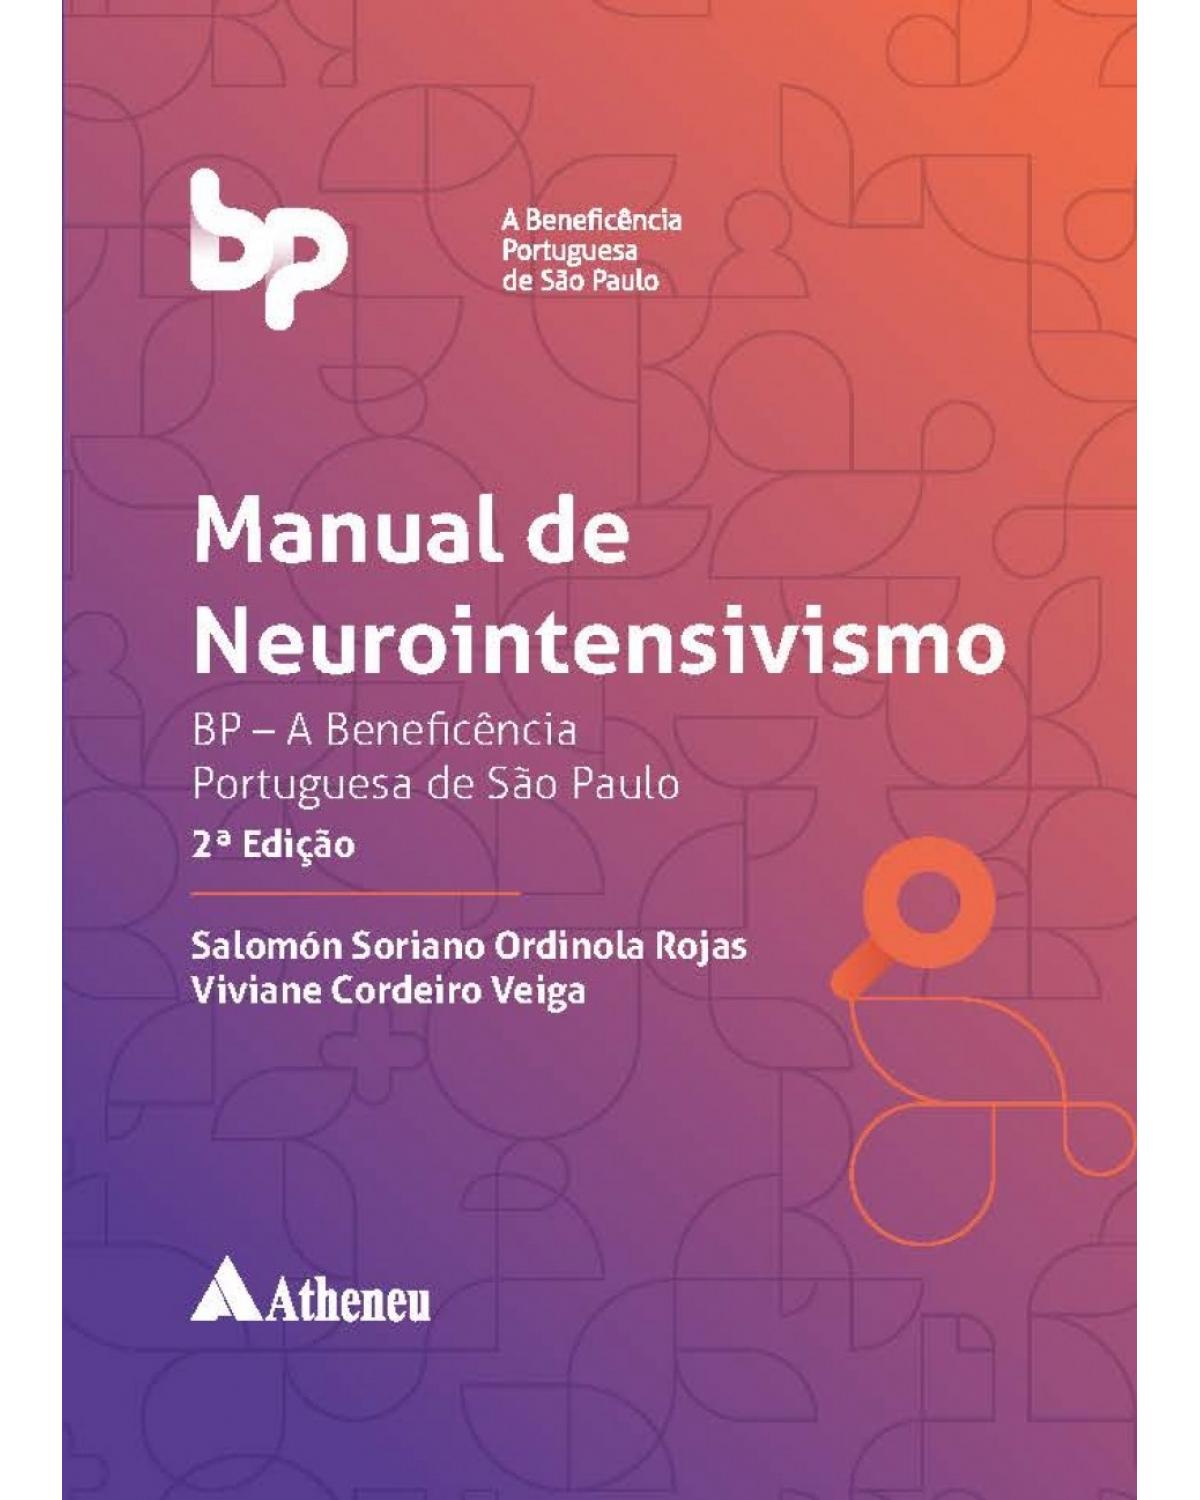 Manual de neurointensivismo - BP - A Beneficência Portuguesa de São Paulo - 2ª Edição | 2018